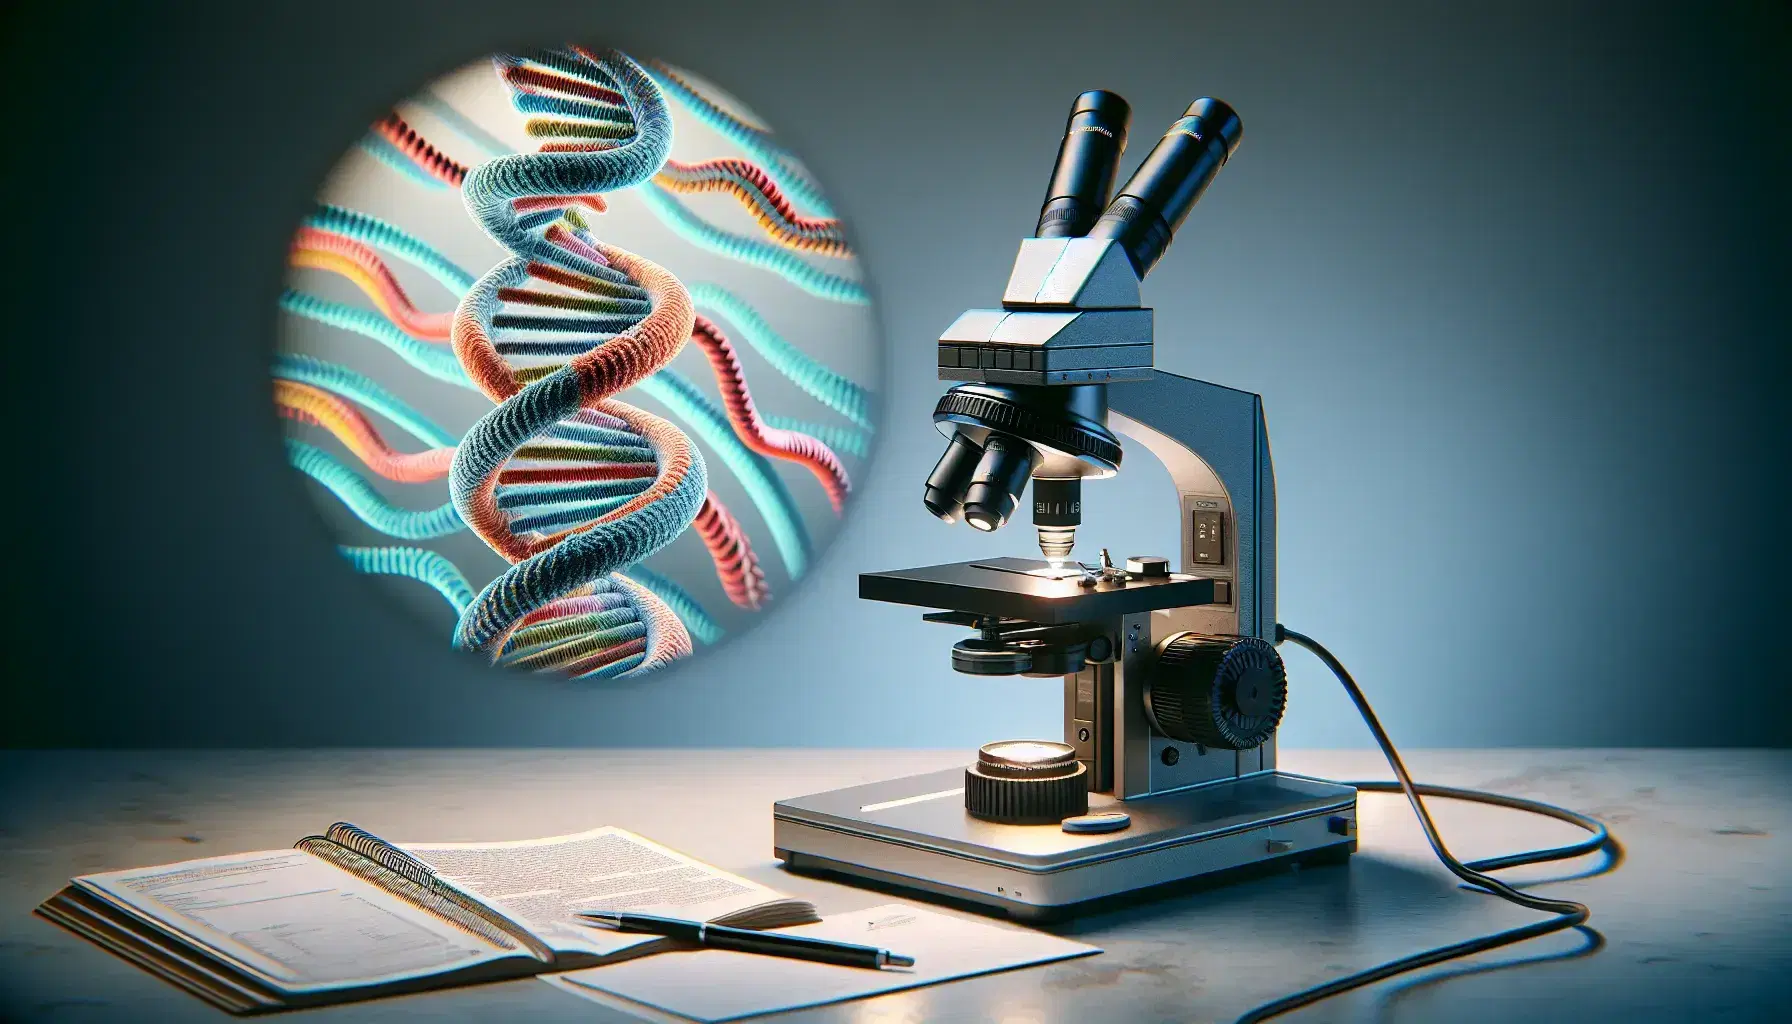 Microscopio electrónico de alta resolución en laboratorio mostrando estructura de doble hélice de ADN en tonos azules, rojos, verdes y amarillos, con cuaderno y bolígrafo al lado.